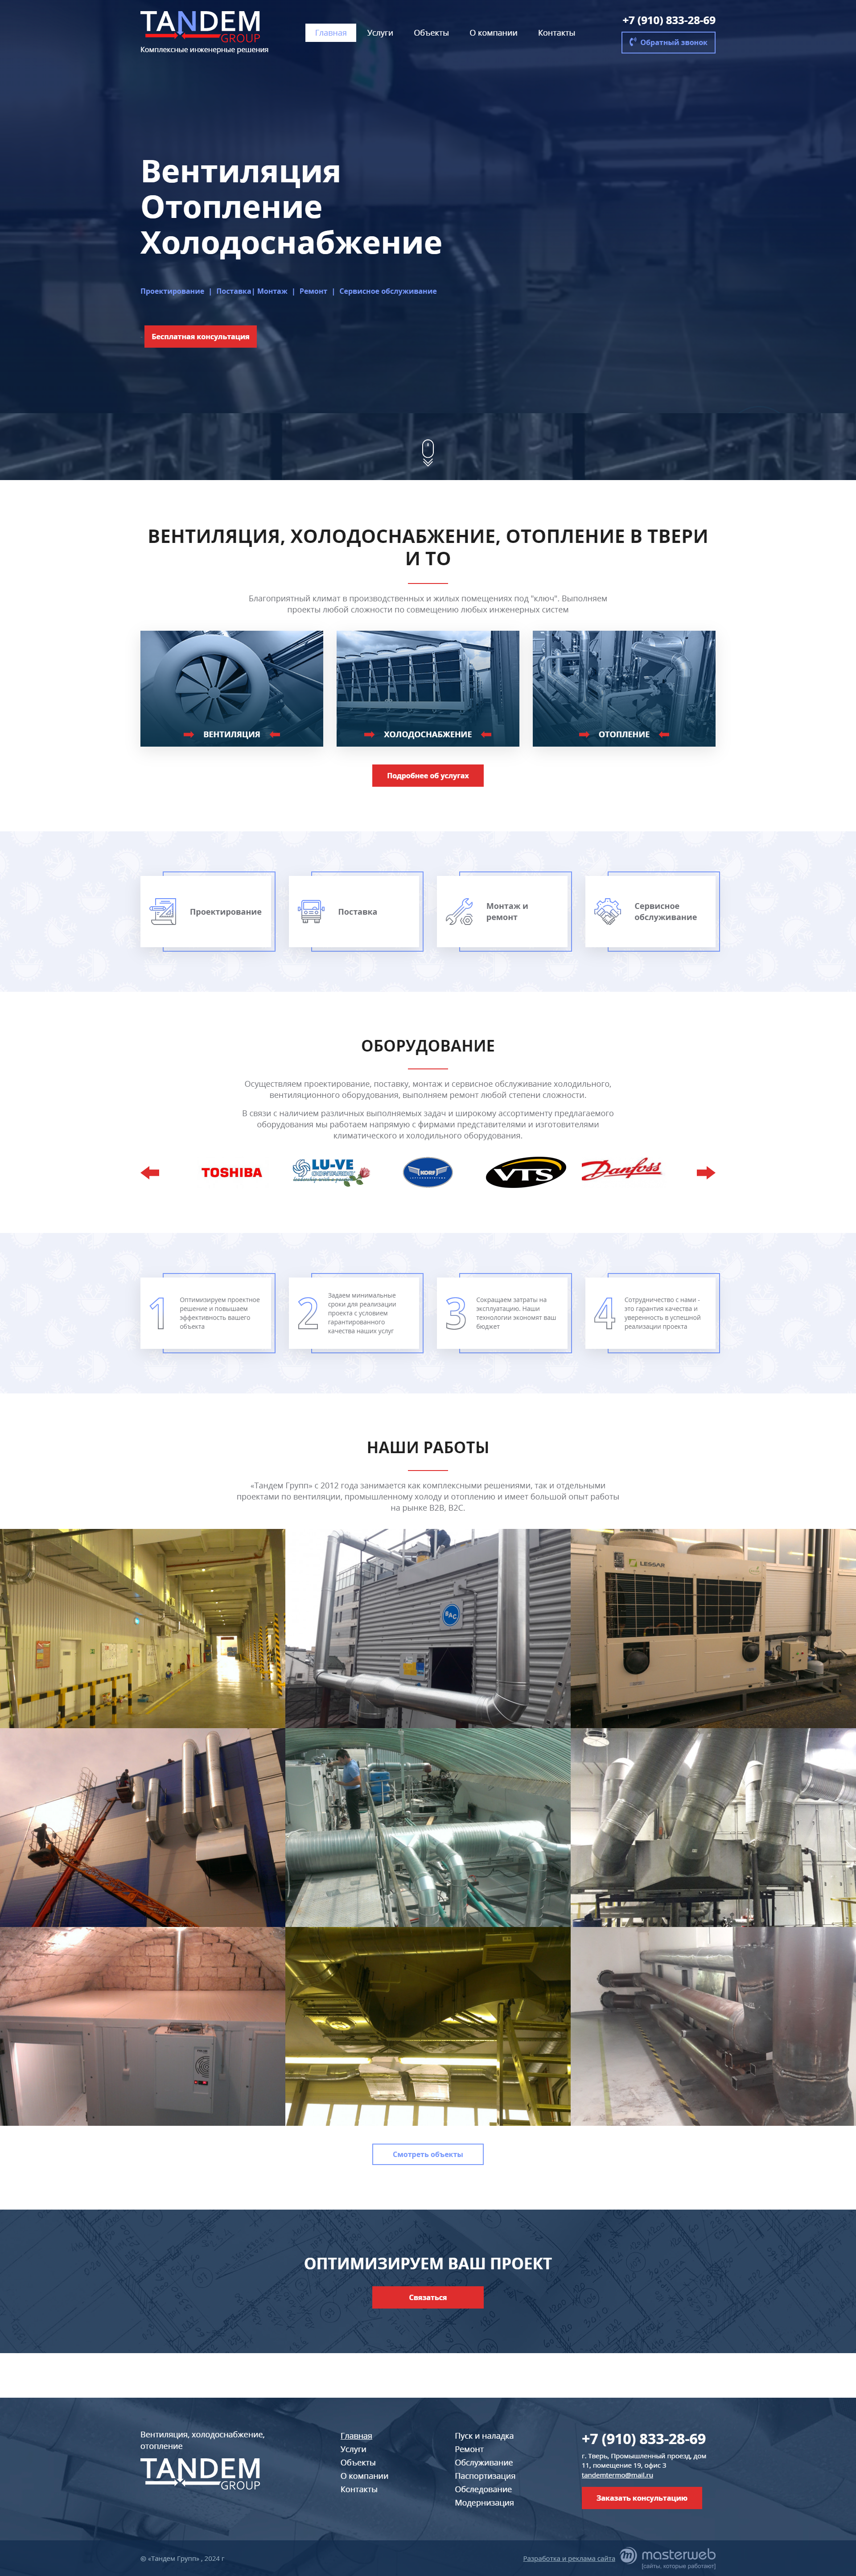 Разработка и продвижение сайта по услугам промышленной вентиляции и отопления — фото-560_2